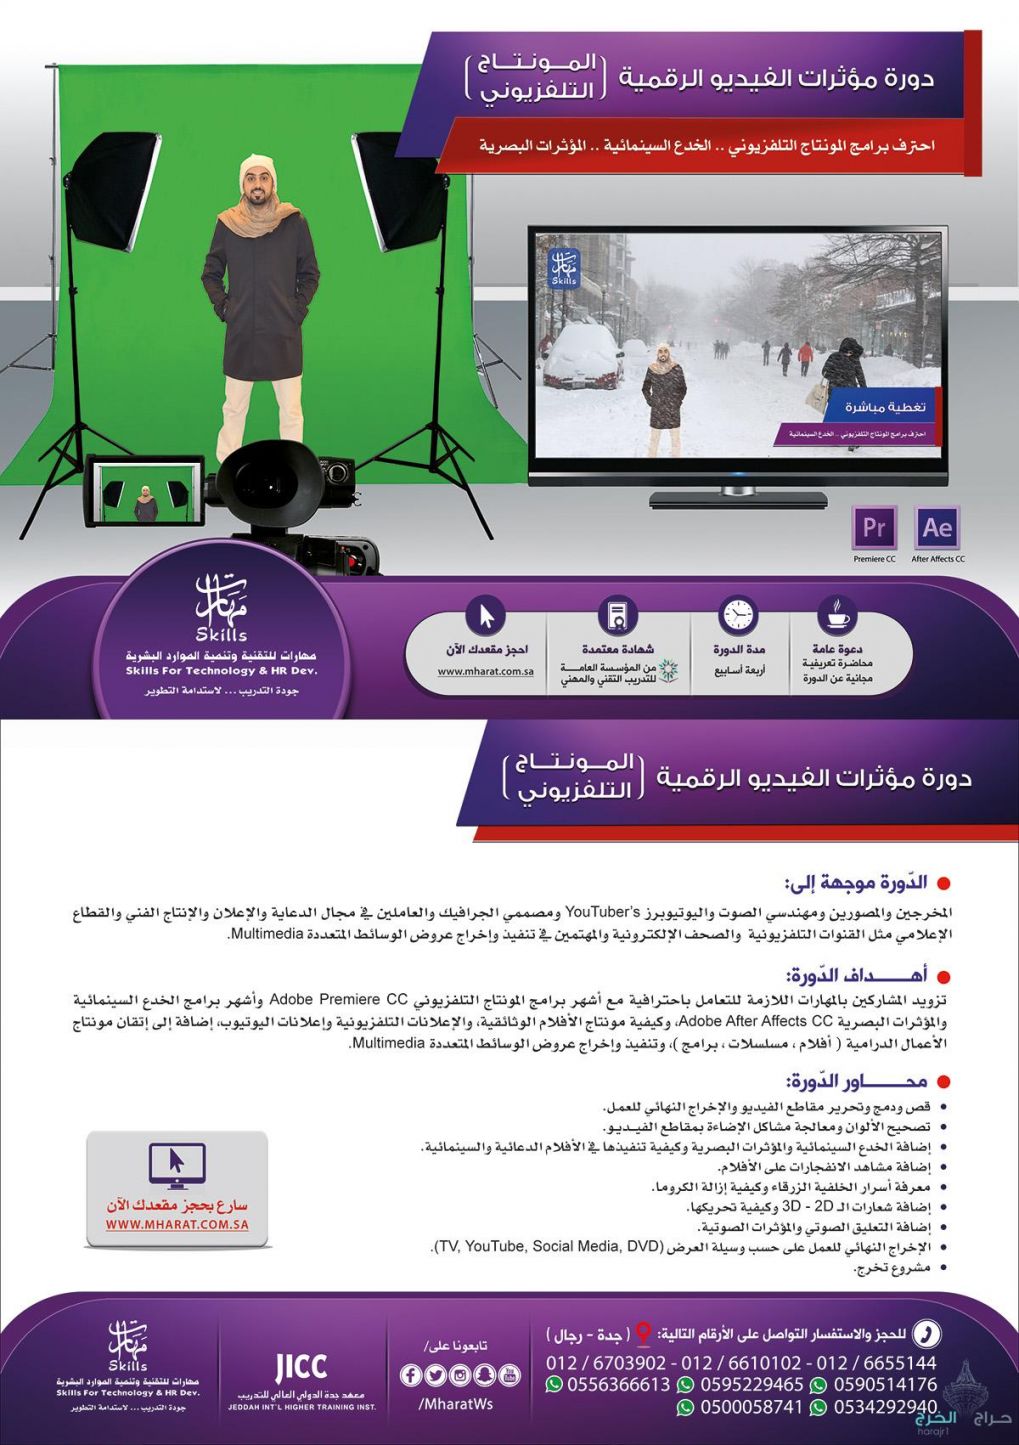 احترف المونتاج التليفزيونى مع احدث الدوارات بمدينة جدة